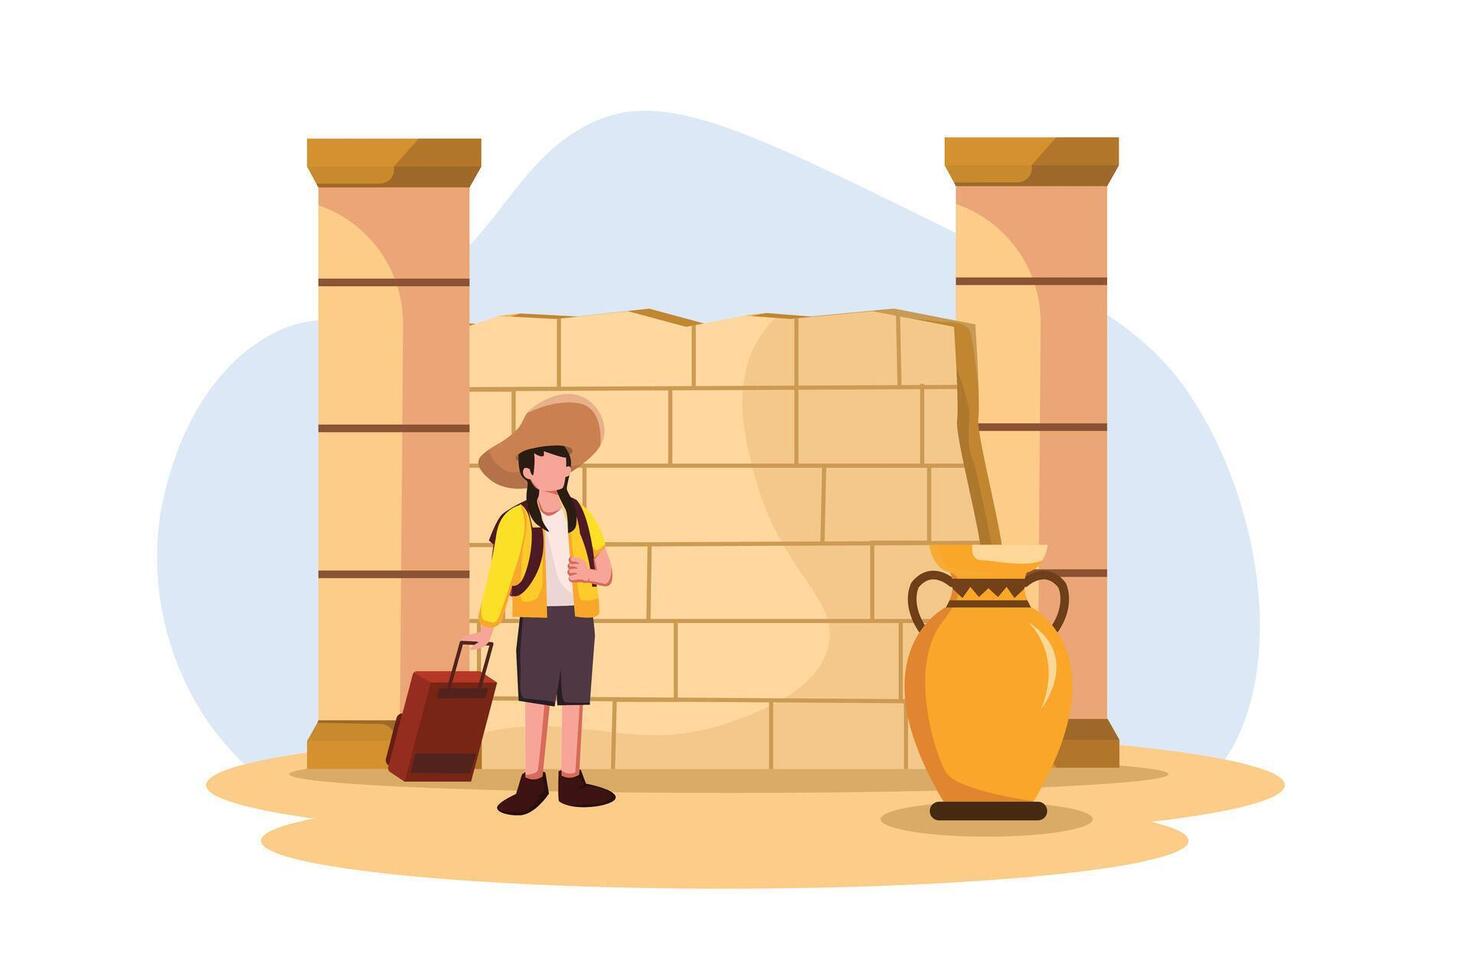 Vacation Traveler Flat Design Illustration vector